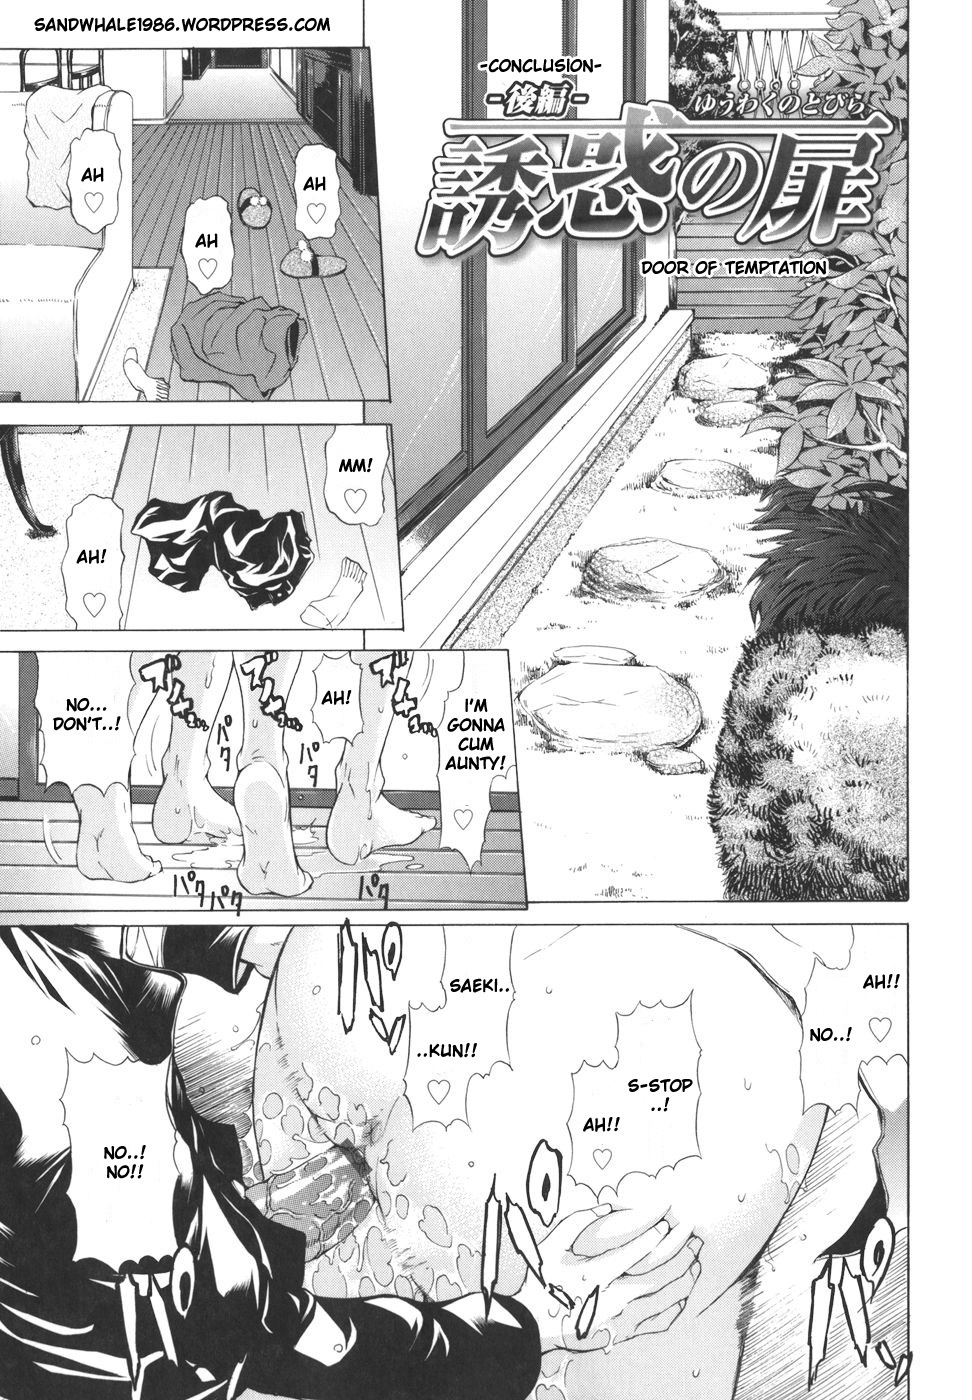 Pearl Rose 26 hentai manga